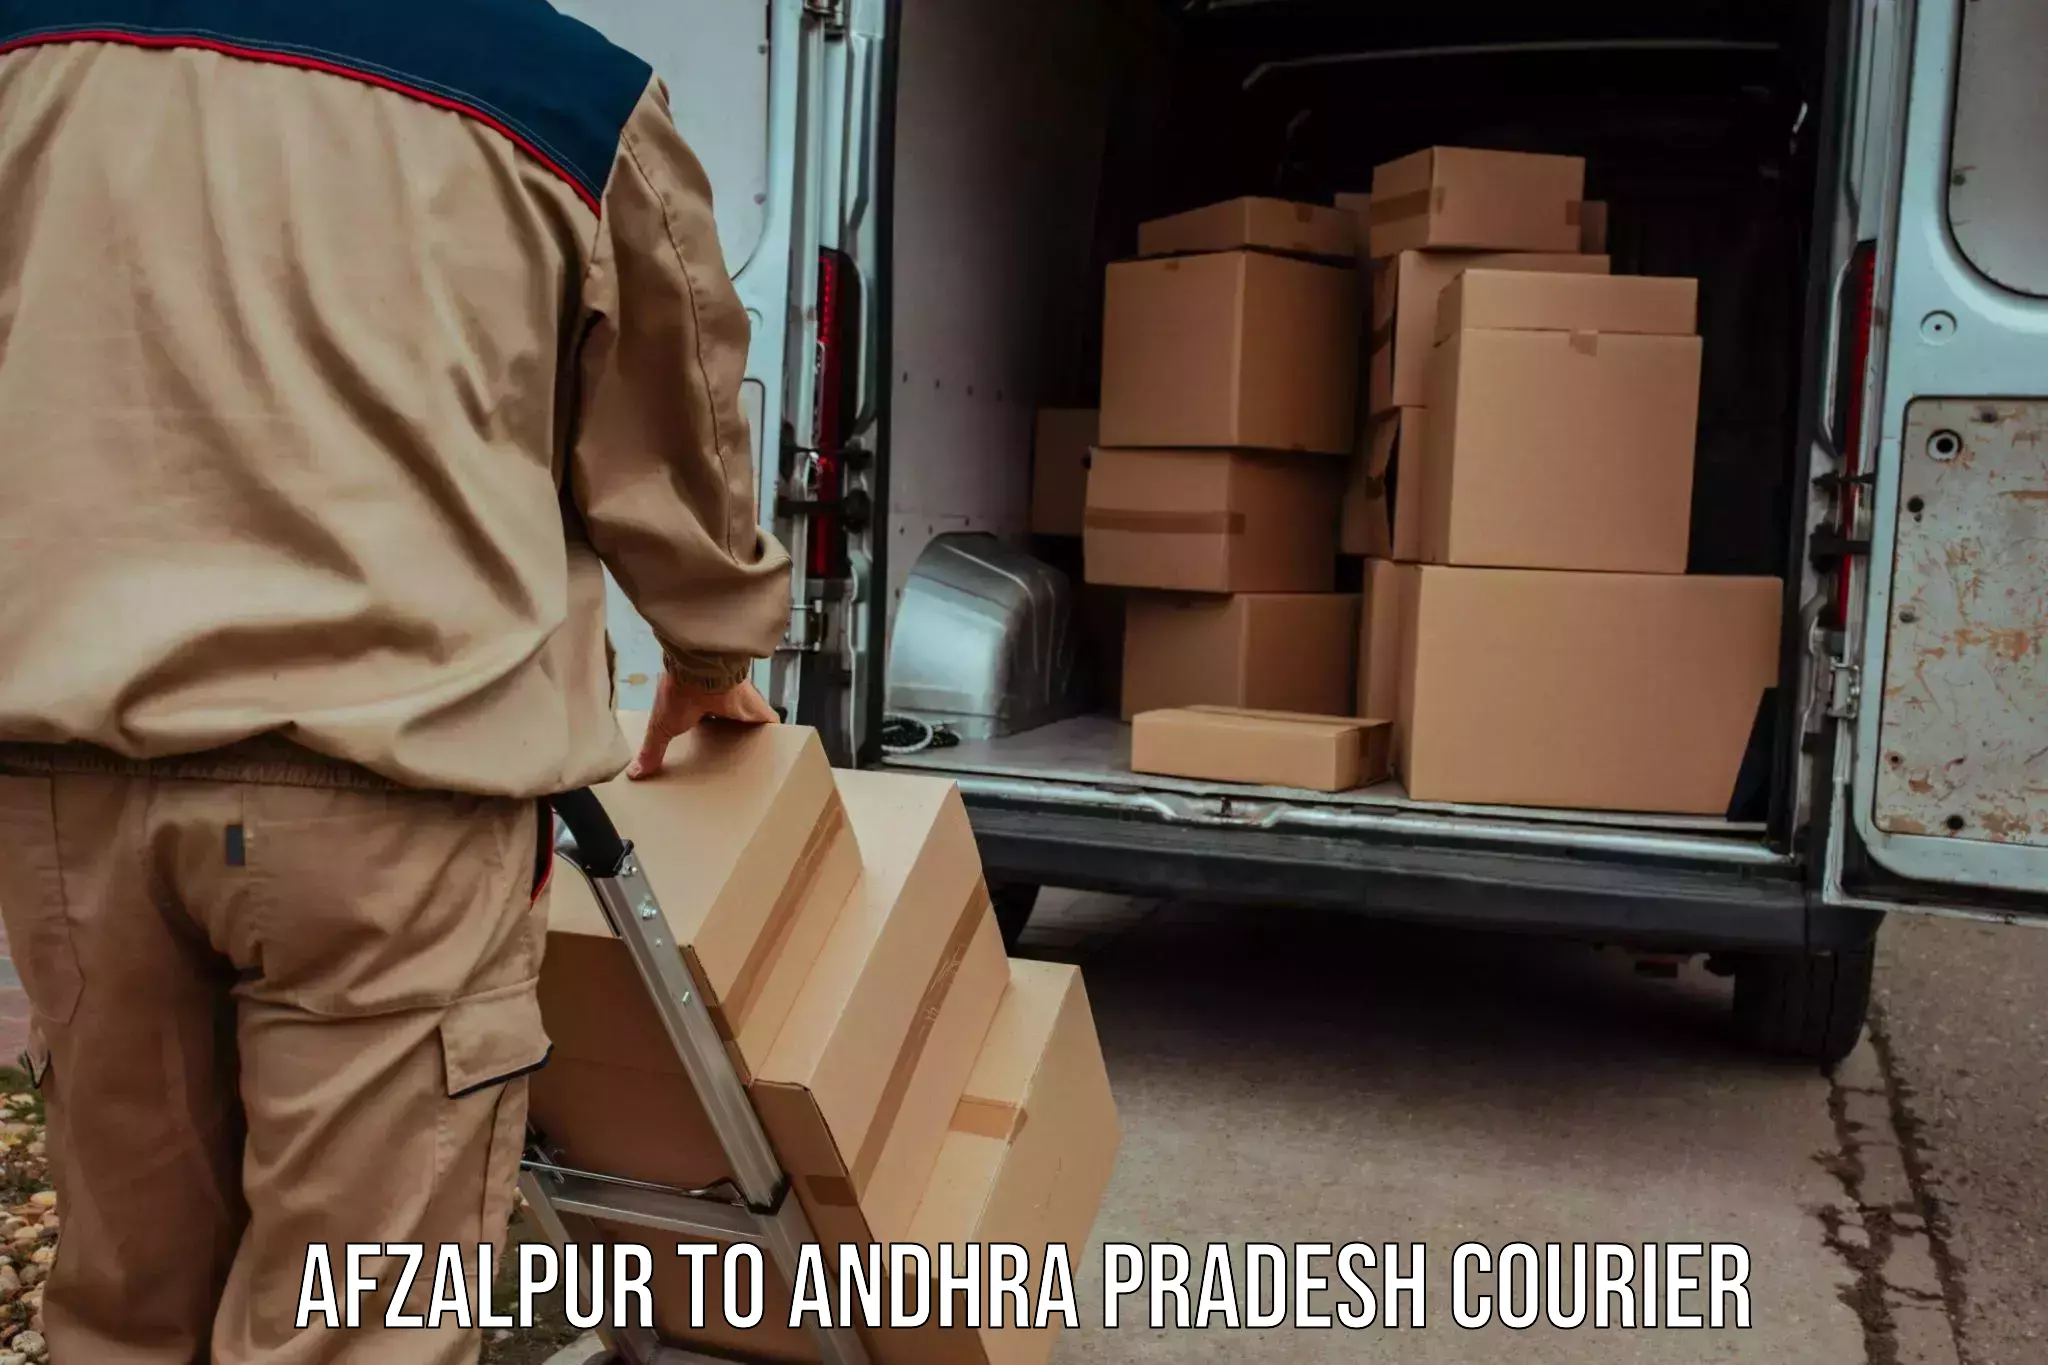 User-friendly courier app Afzalpur to Pileru